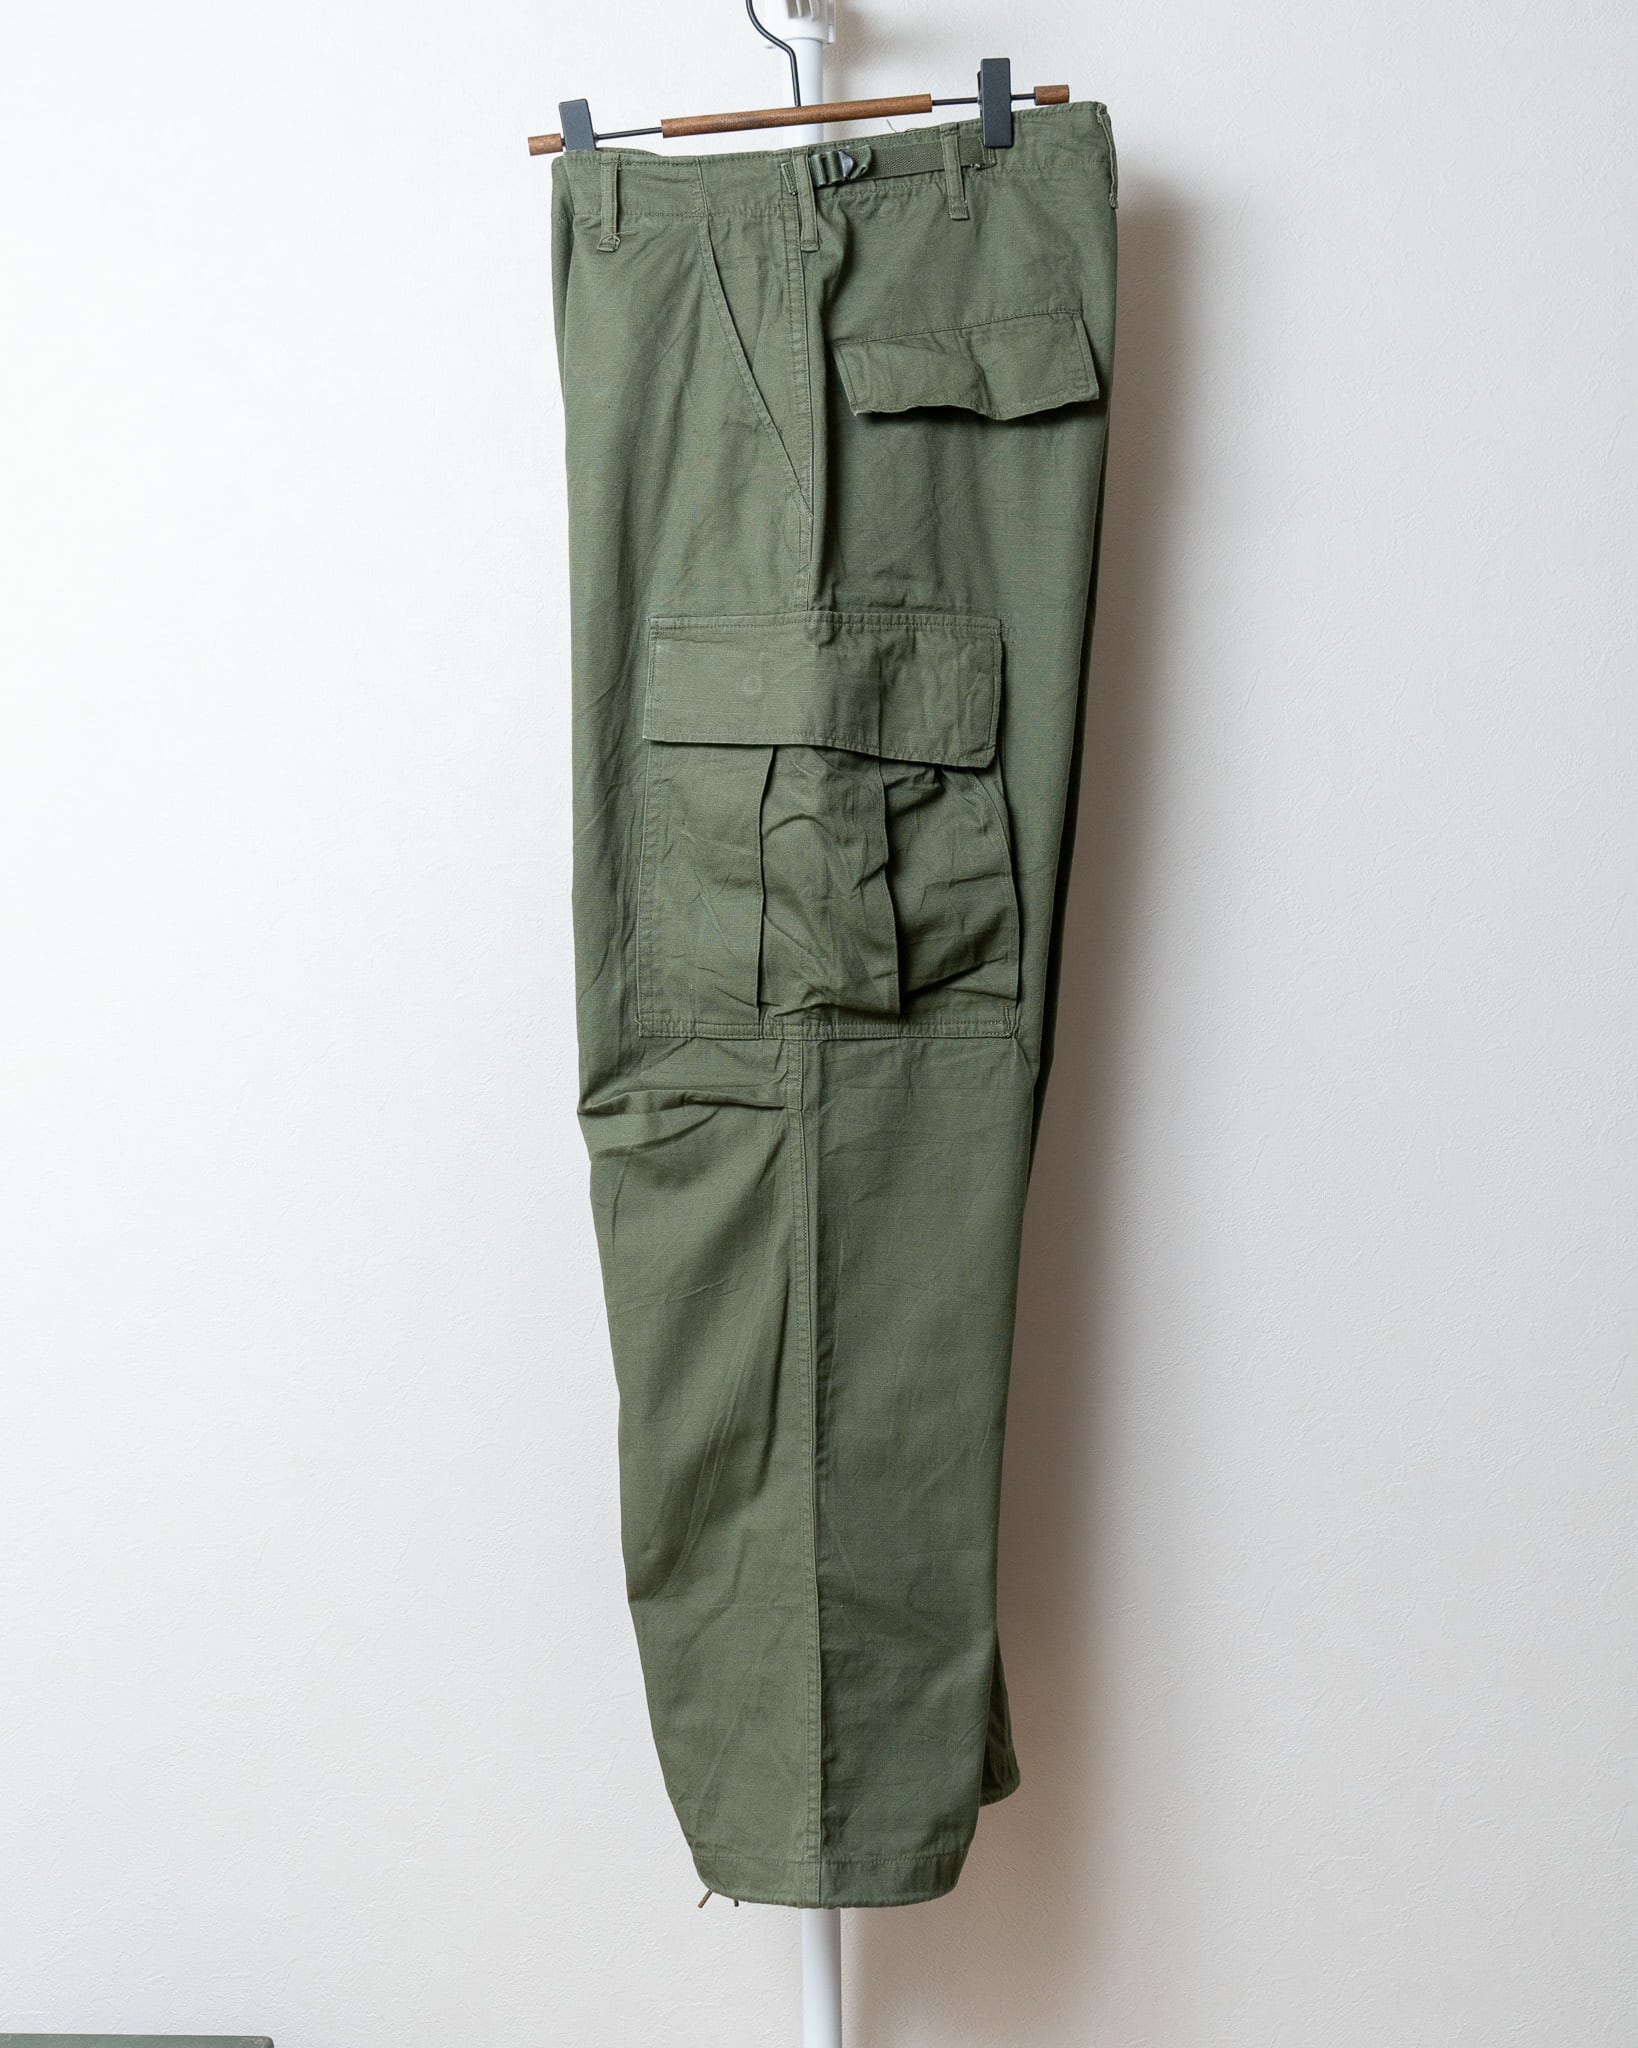 S-R】U.S.Army 60's Jungle Fatigue Pants 4th OG-107 